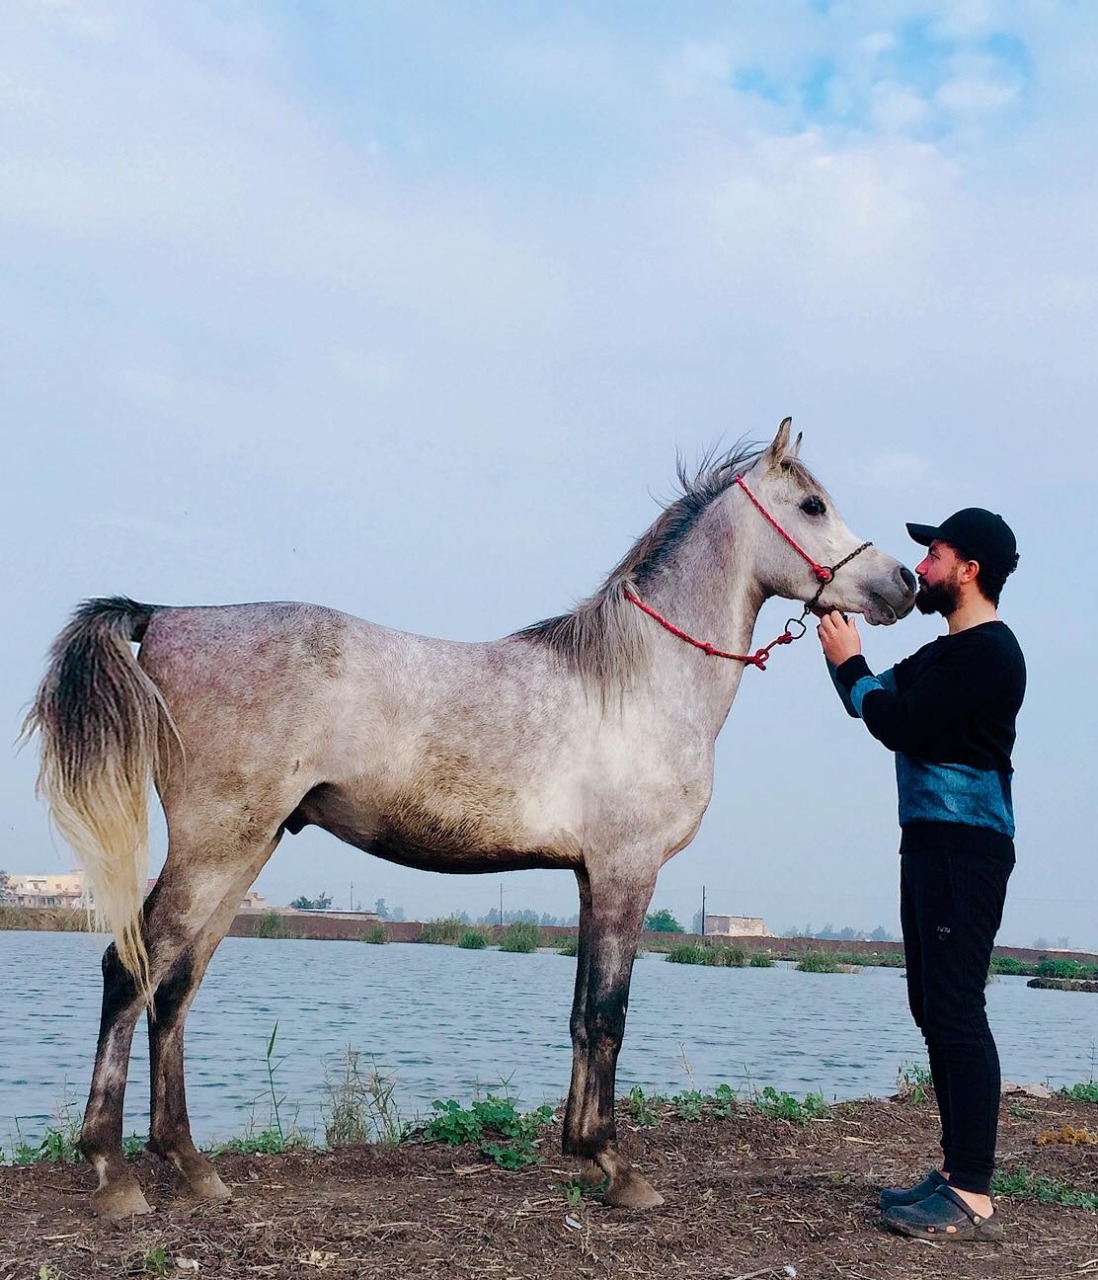 بالفيديو والصور.. عرض الحصان "فخر العمر" للبيع في كفر الشيخ.. تعرف على السعر النهائي